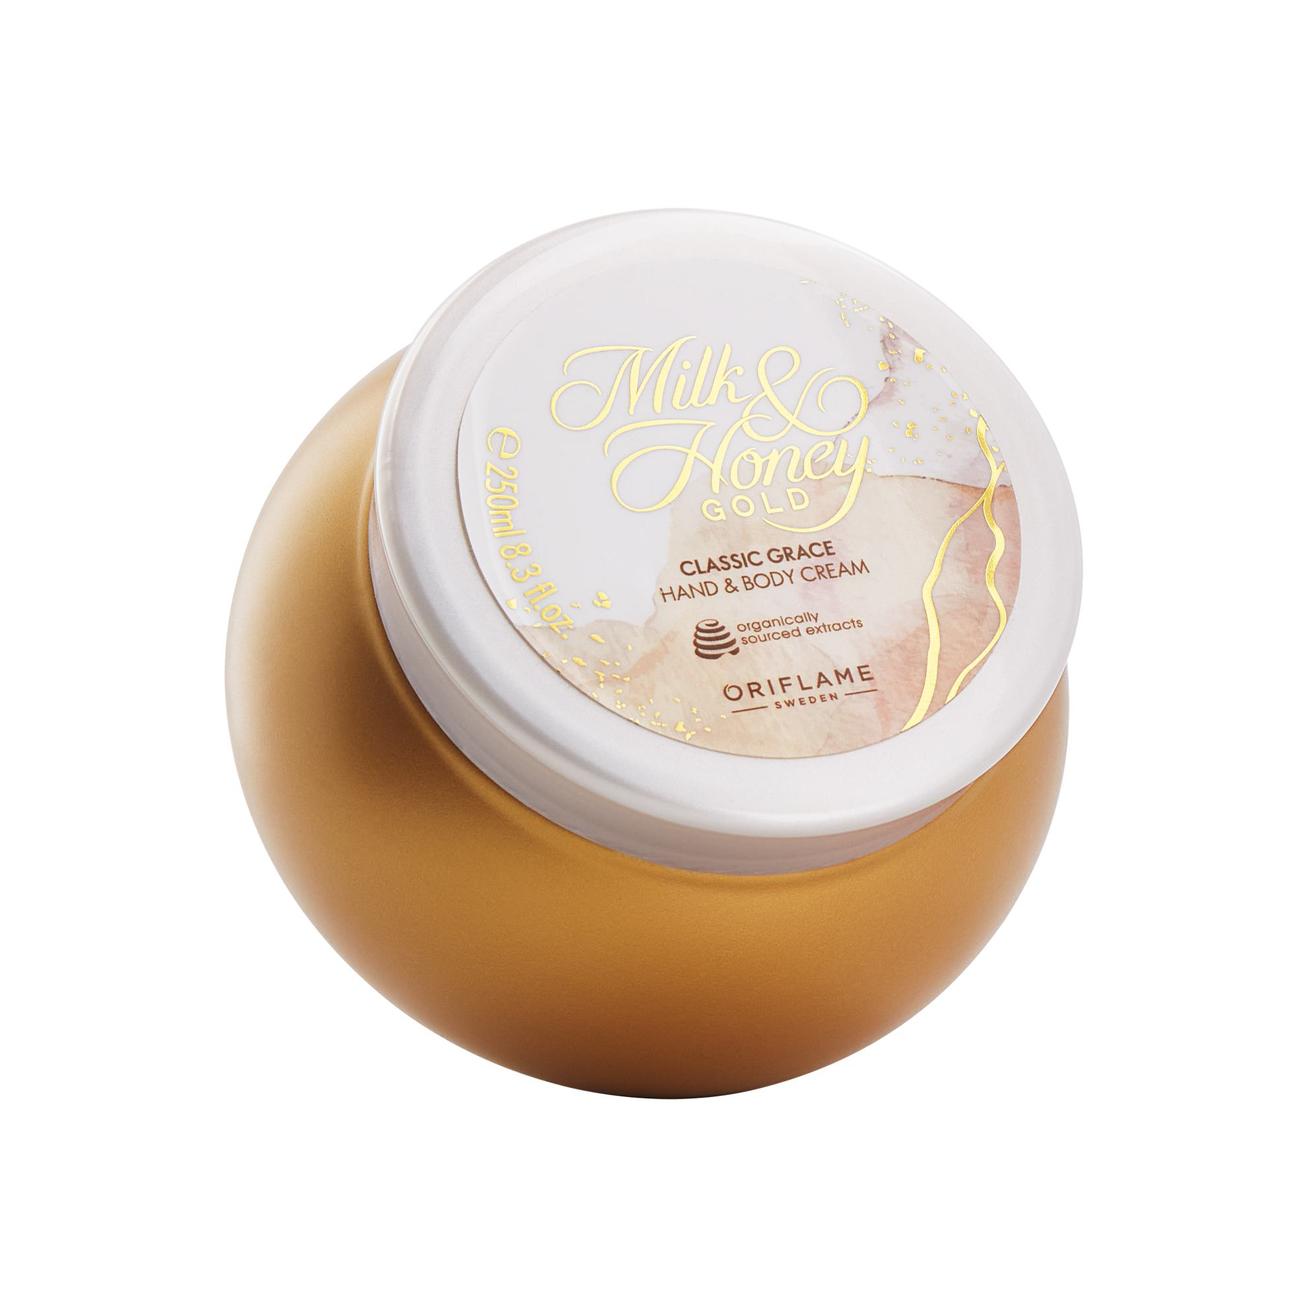 Oferta de Crema para Manos y Cuerpo Milk & Honey Gold Classic Grace por $15000 en Oriflame